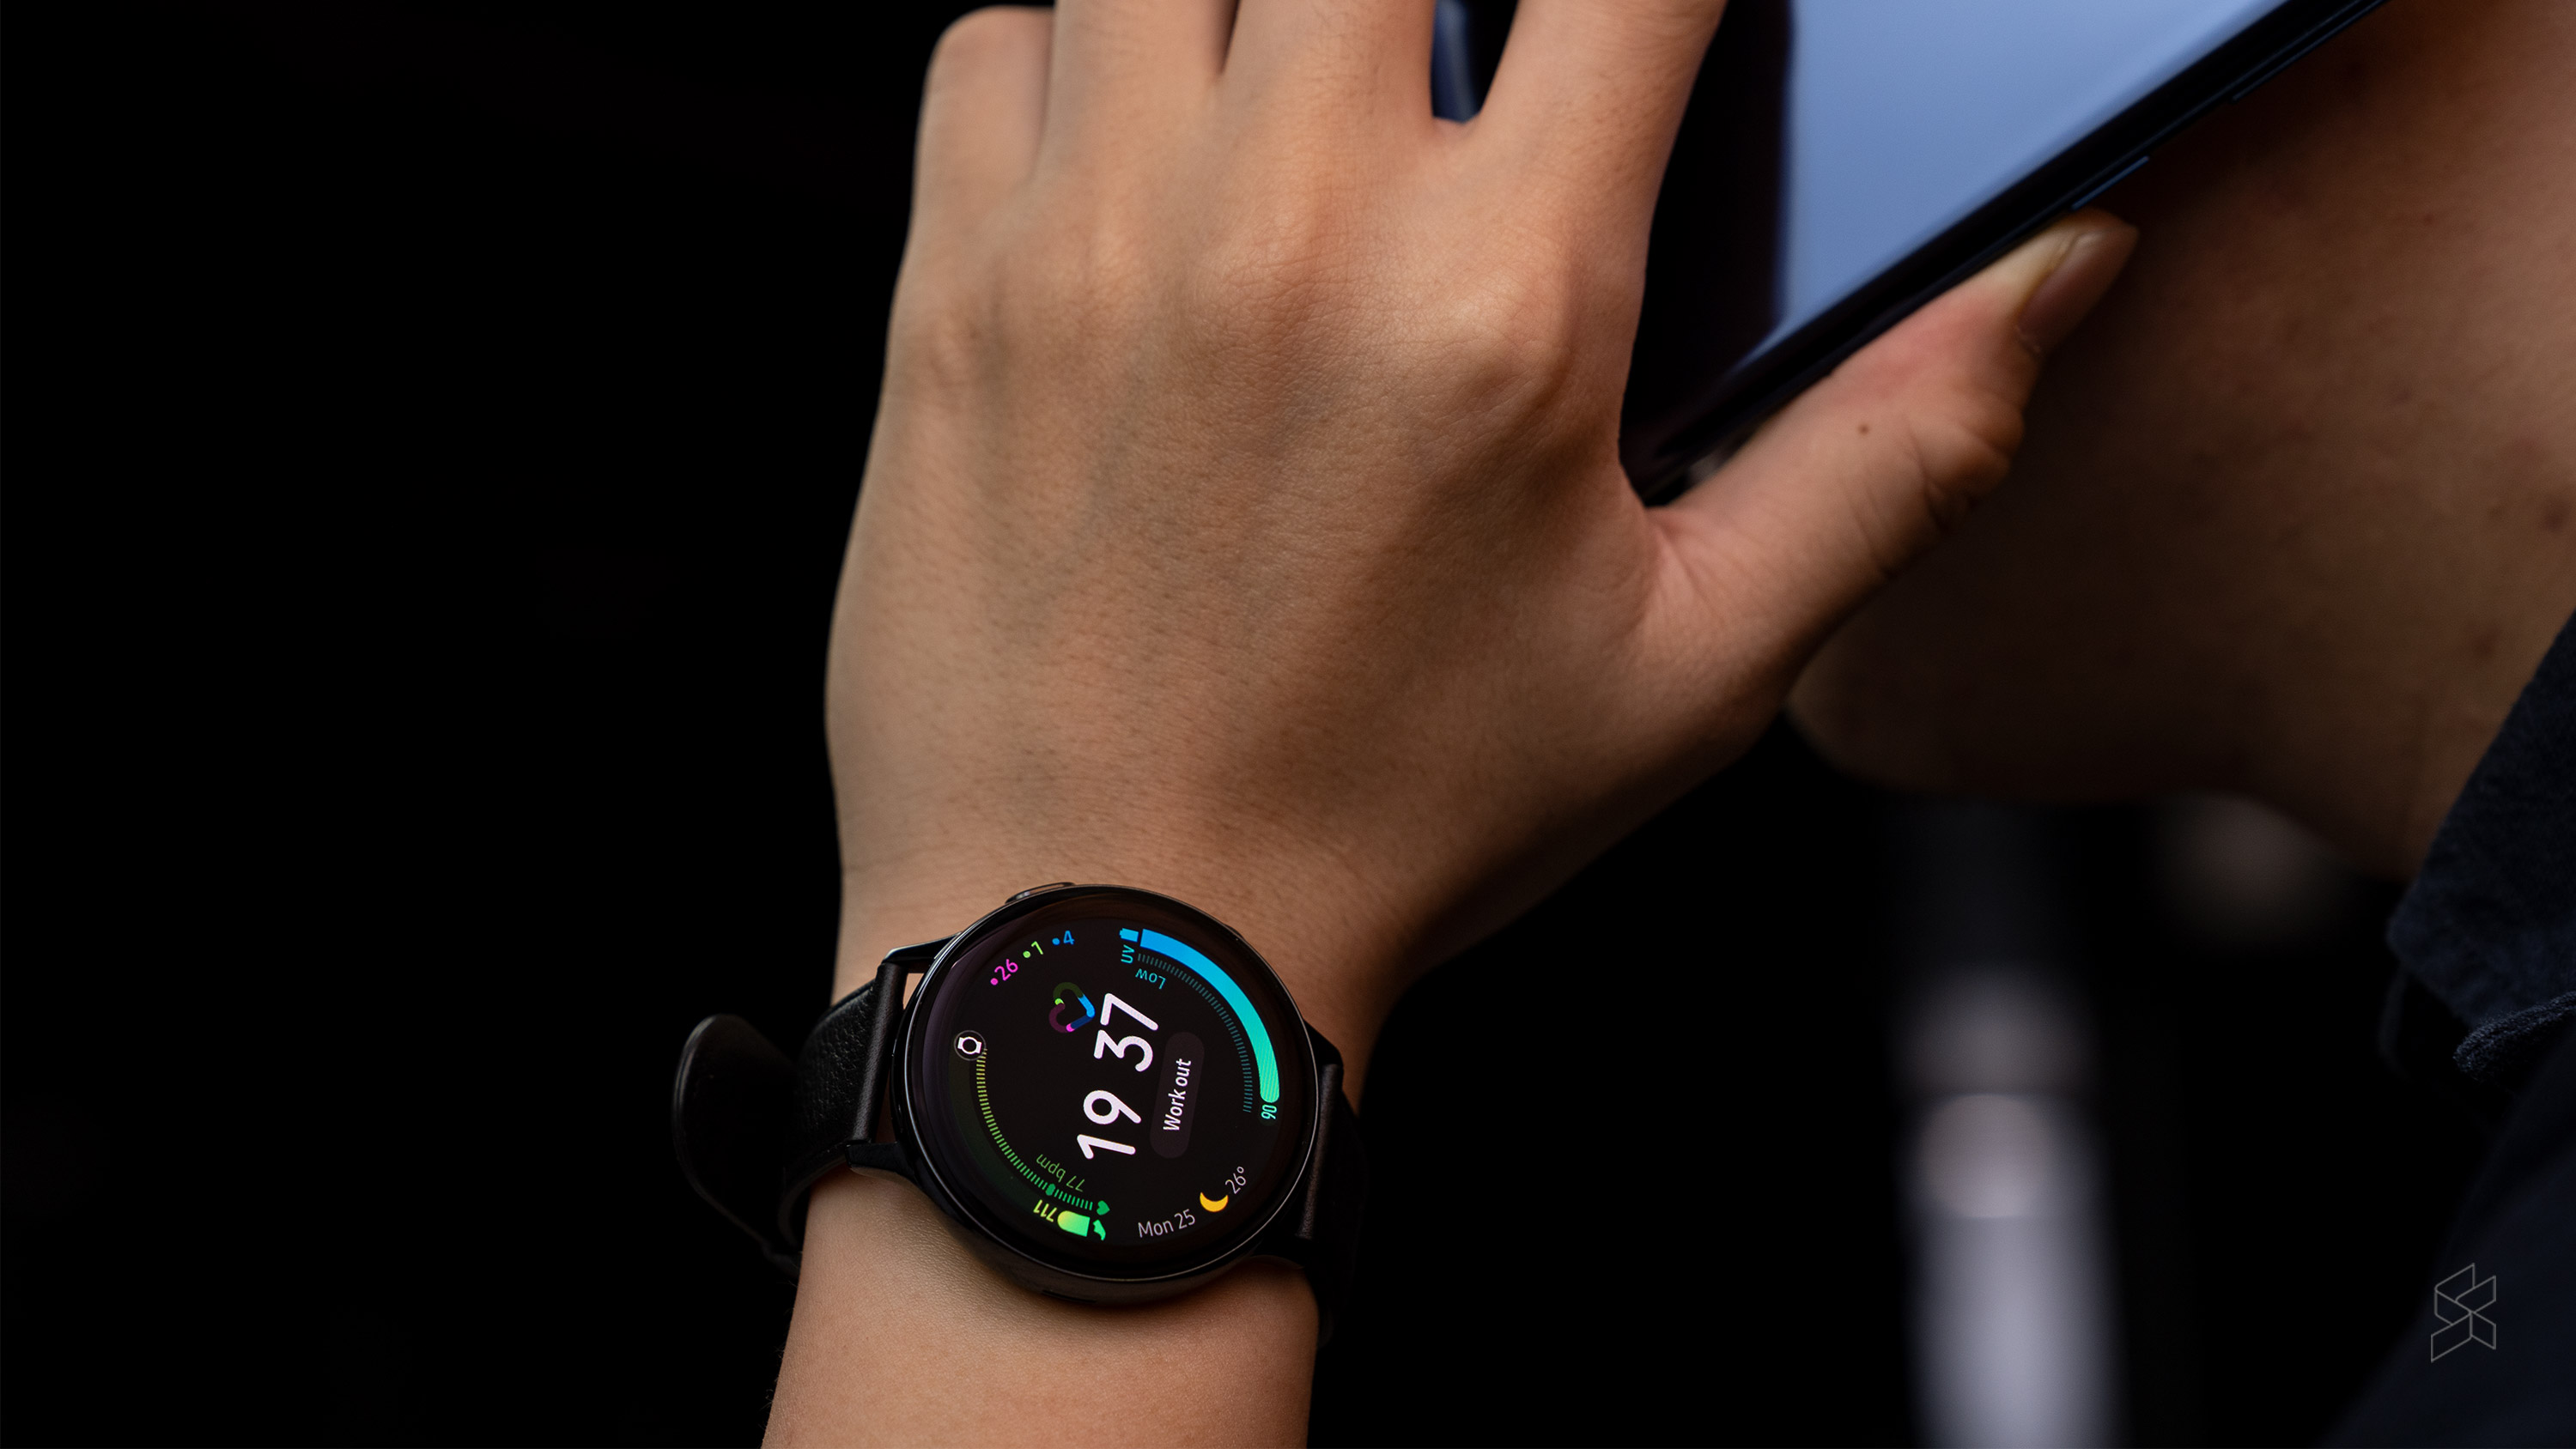 Samsung Galaxy Watch Active 2 Возможности